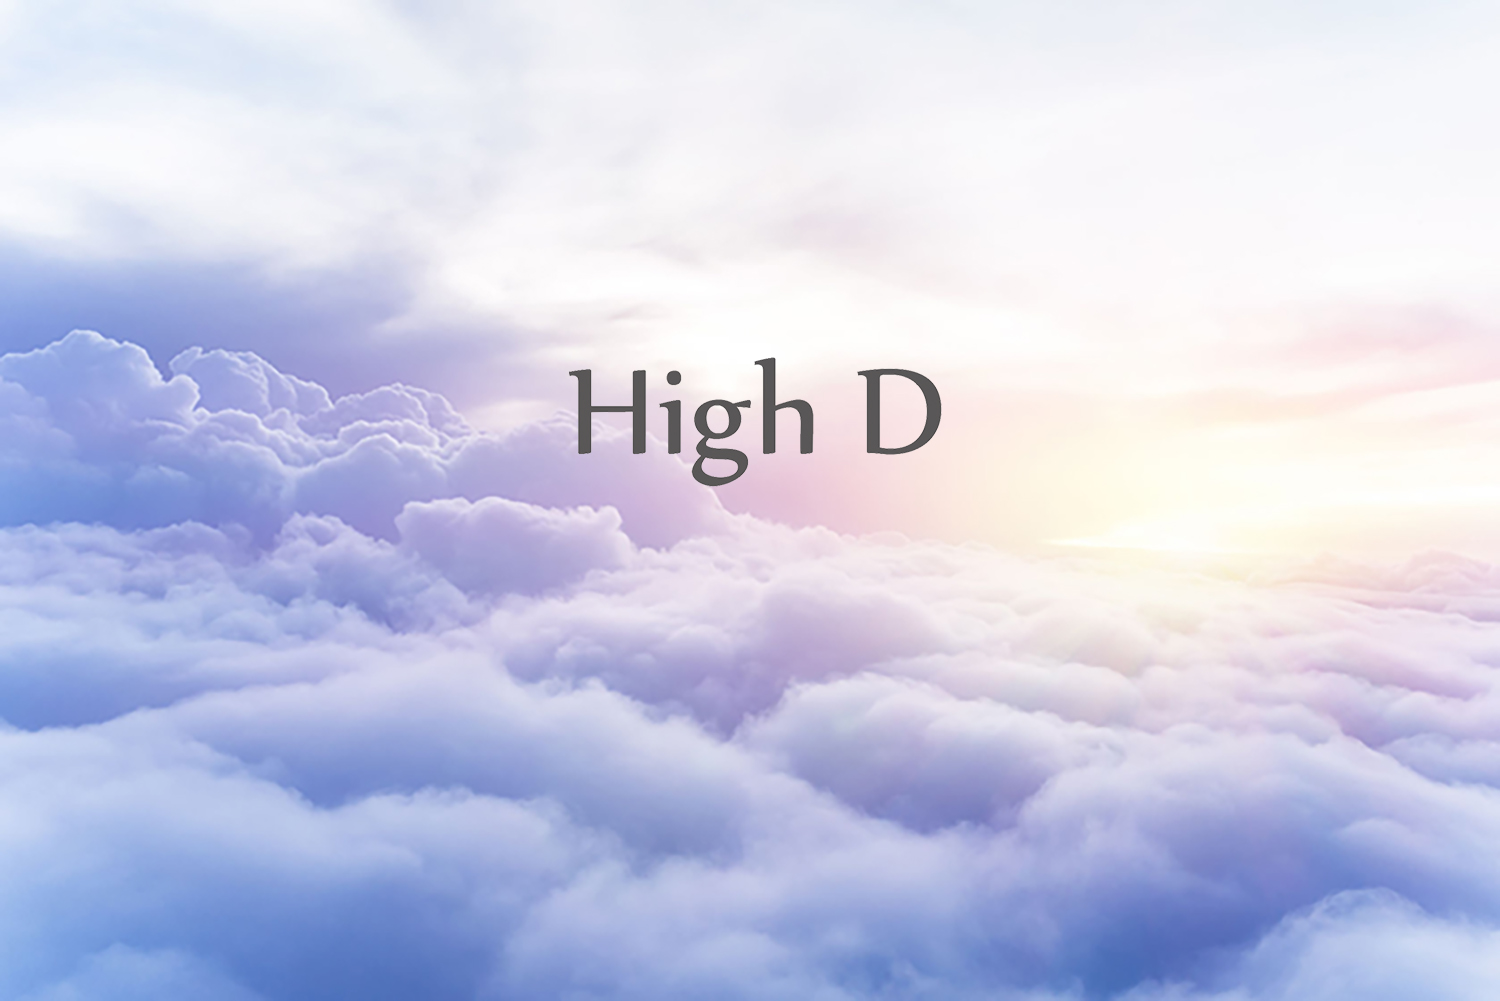 High D の想い